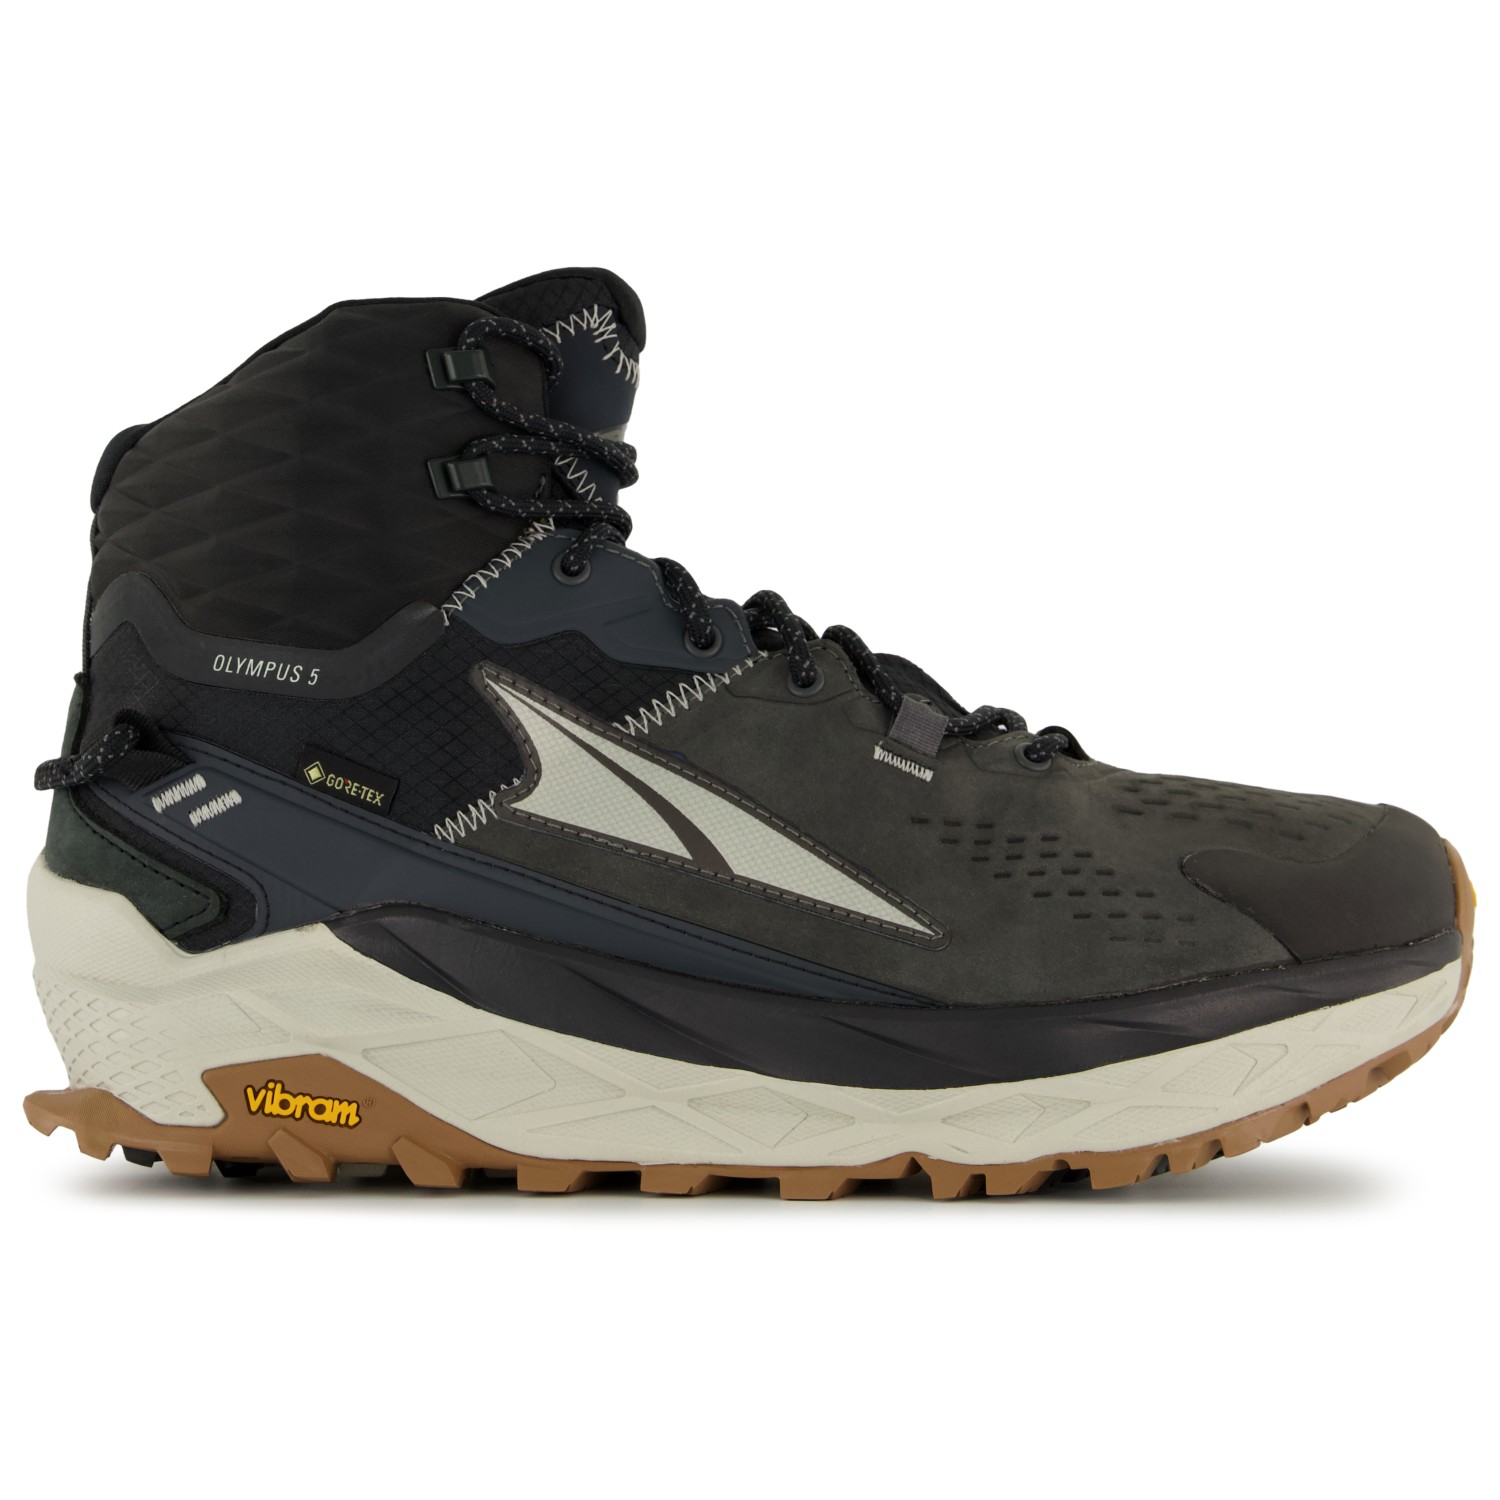 Ботинки для прогулки Altra Olympus 5 Hike Mid GTX, цвет Black/Gray